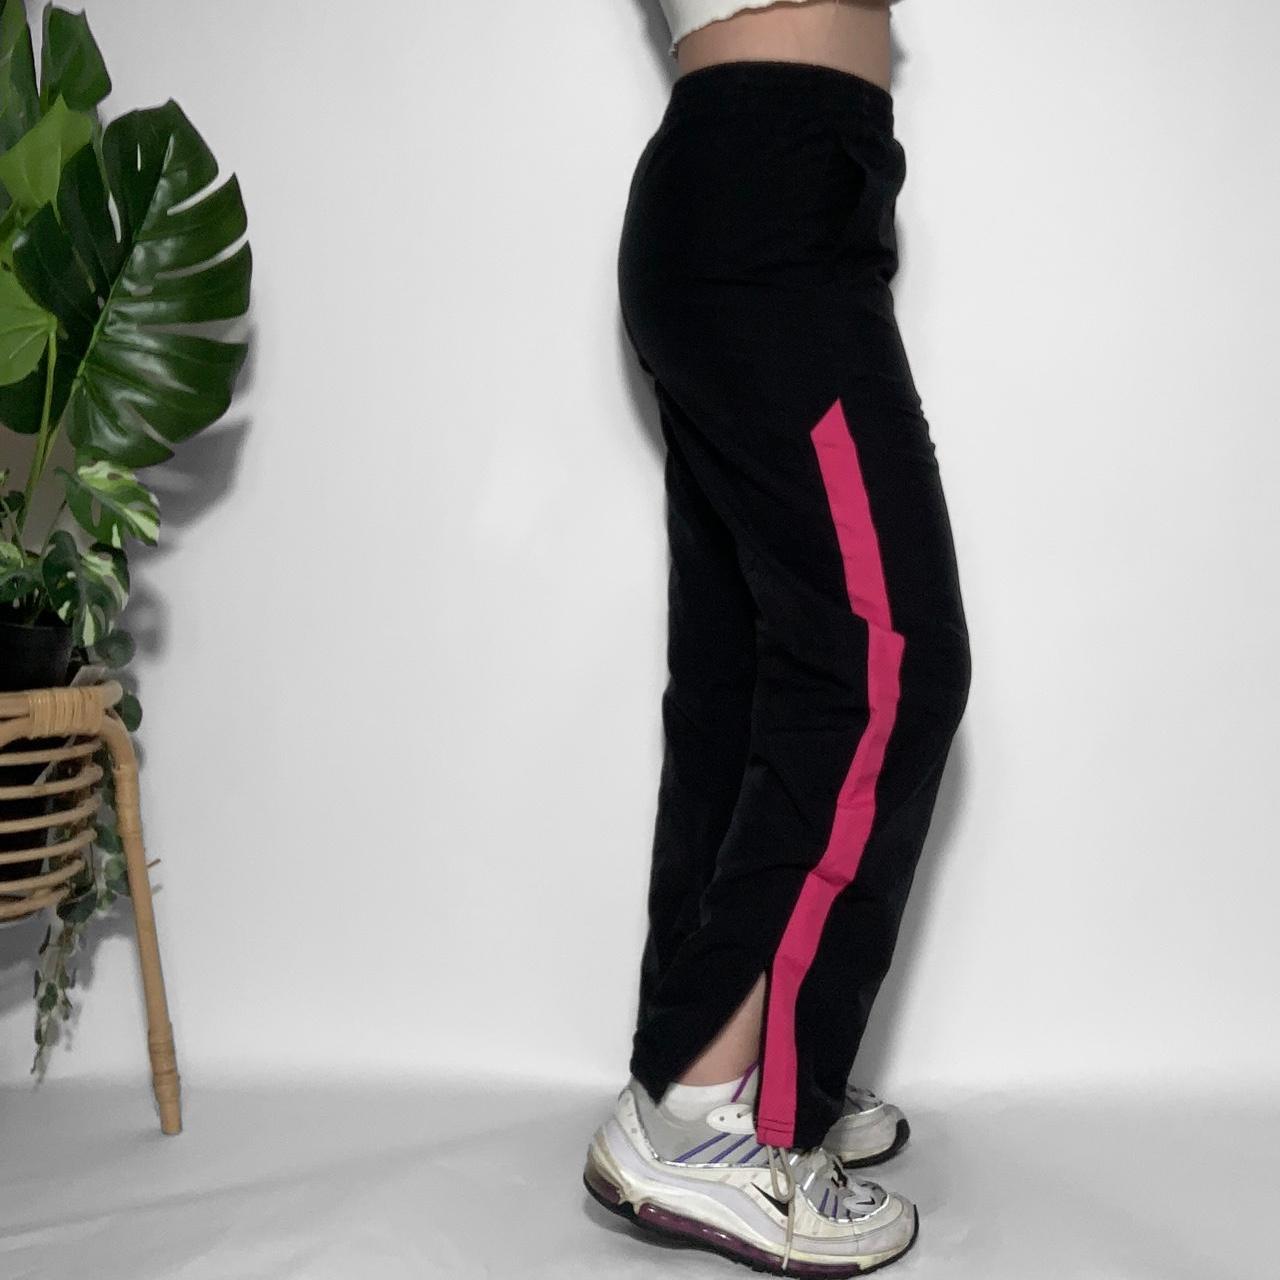 Retro Nike Track Pants - Vintage 80s 90s Y2K Fashion